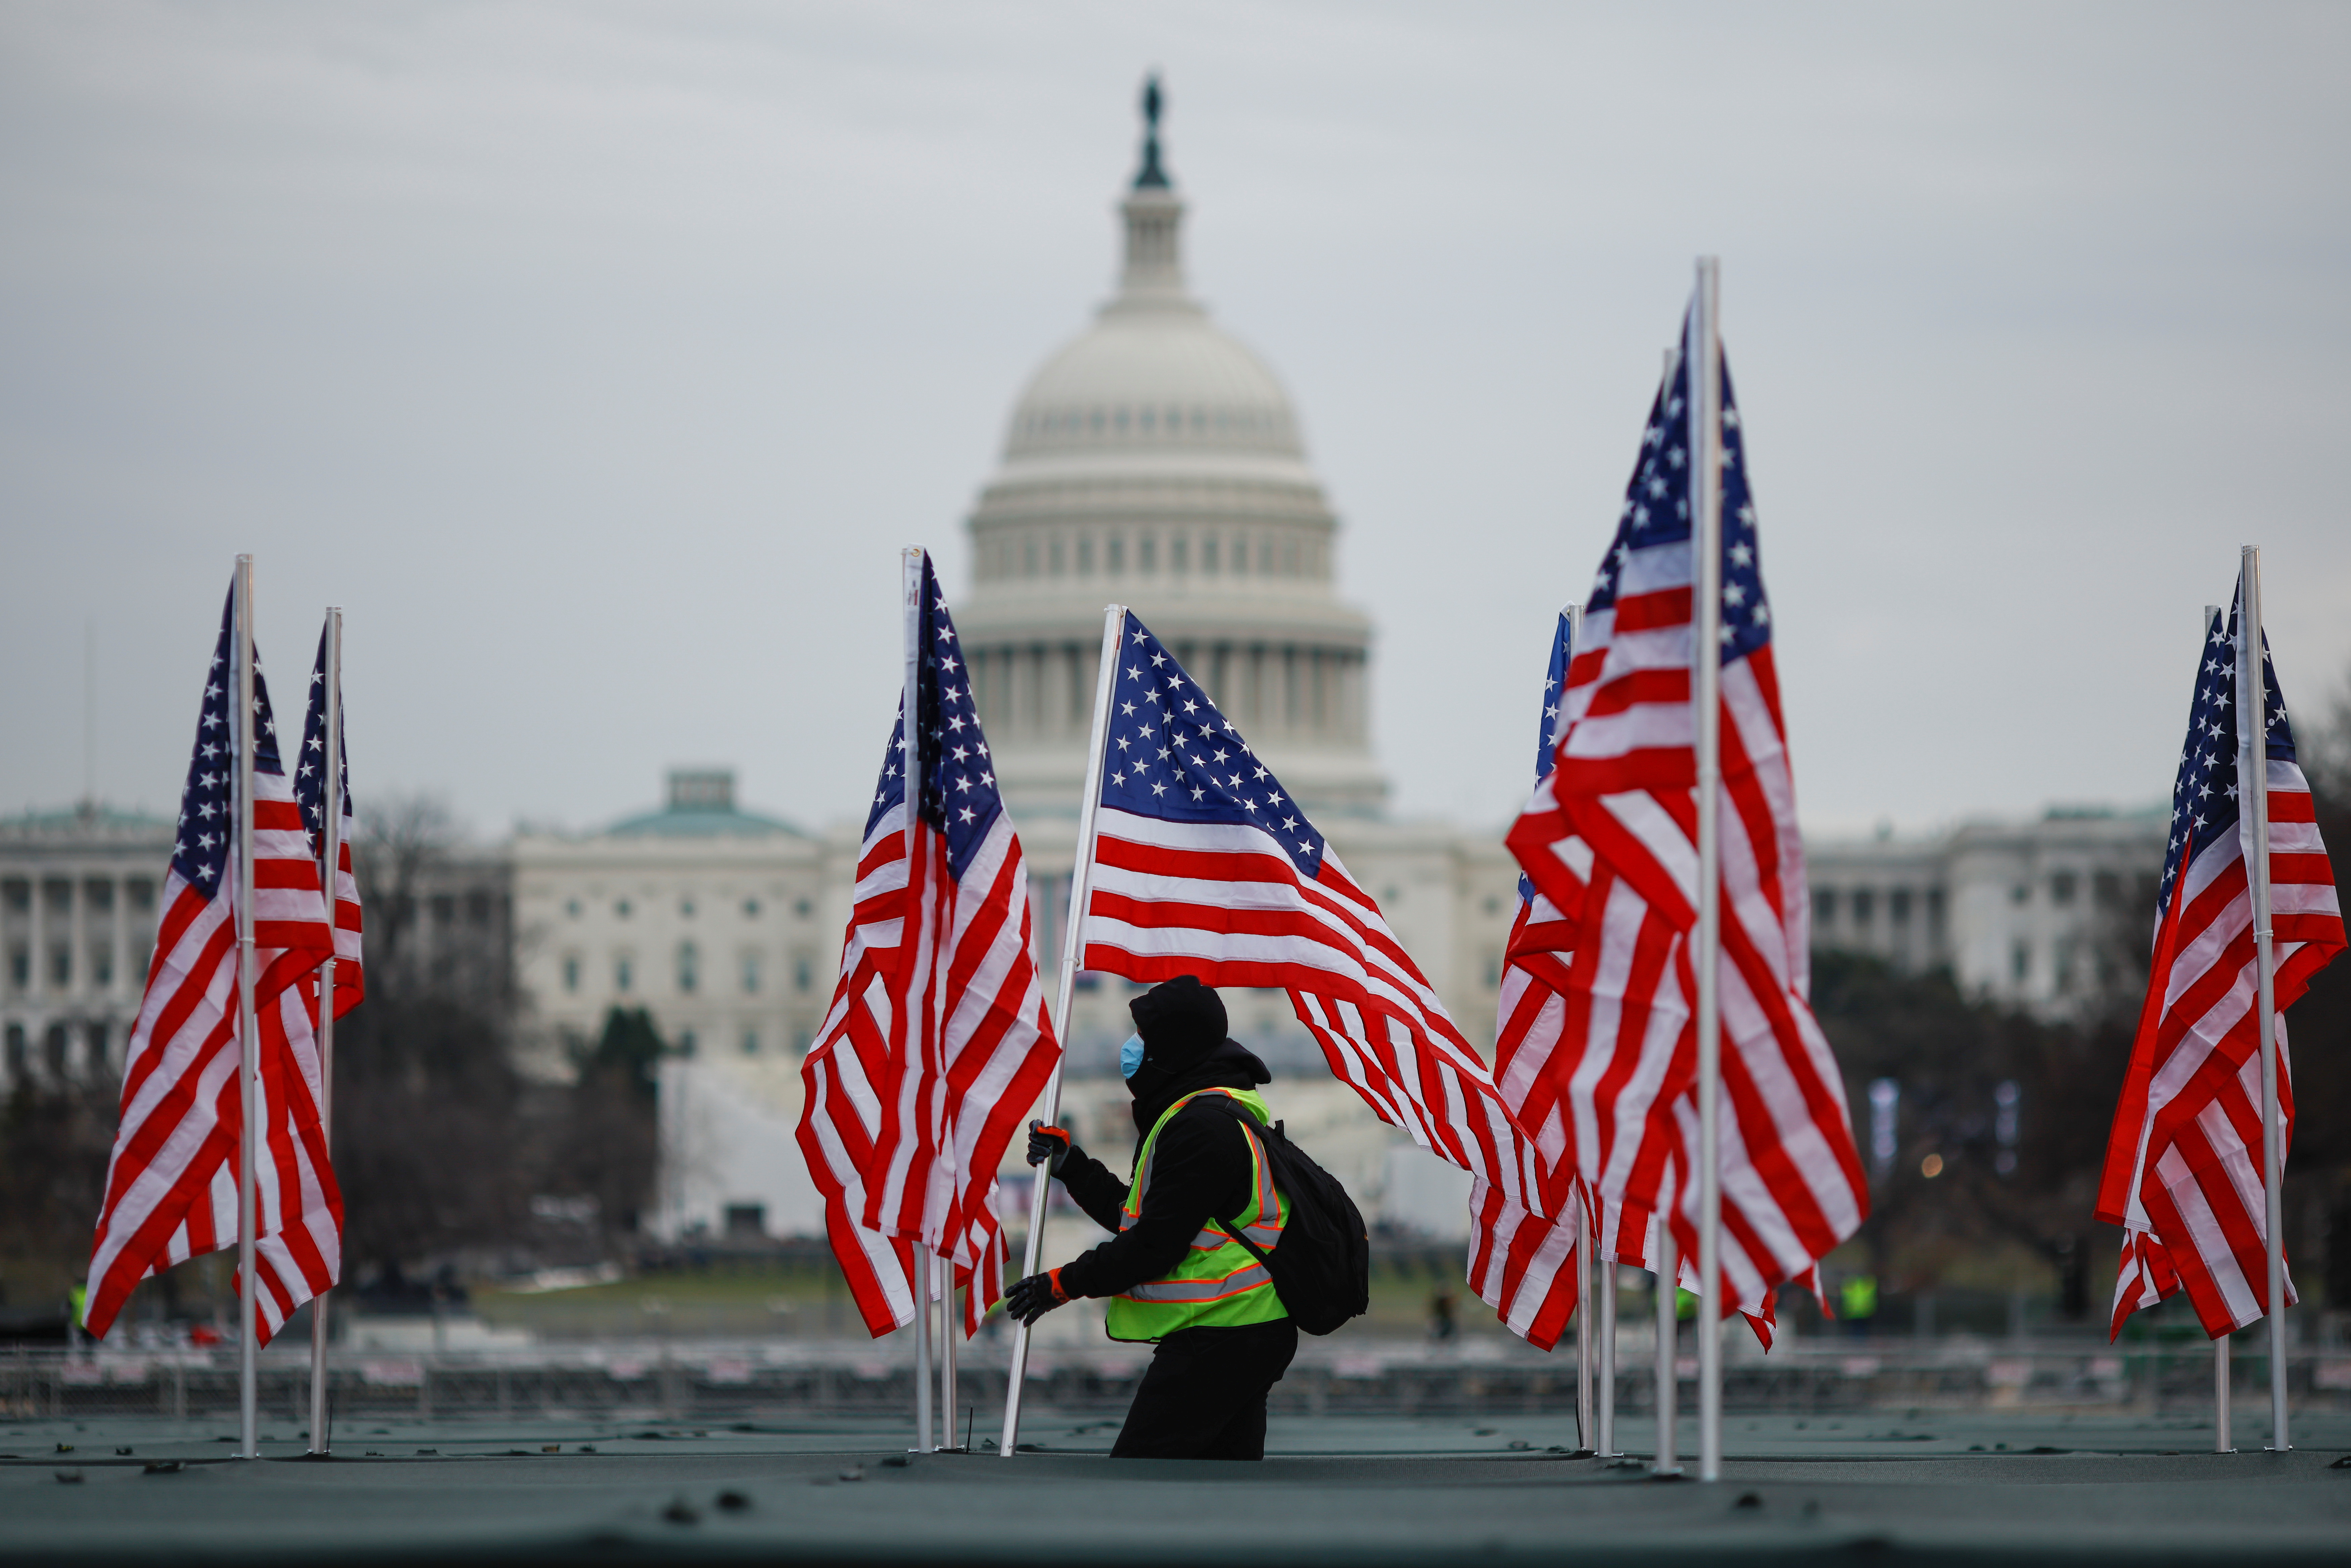 Un trabajador instala una bandera de los Estados Unidos para exhibirla en el National Mall, como parte del homenaje que prepare Biden para las víctimas de coronavirus en el país. REUTERS / Carlos Barria